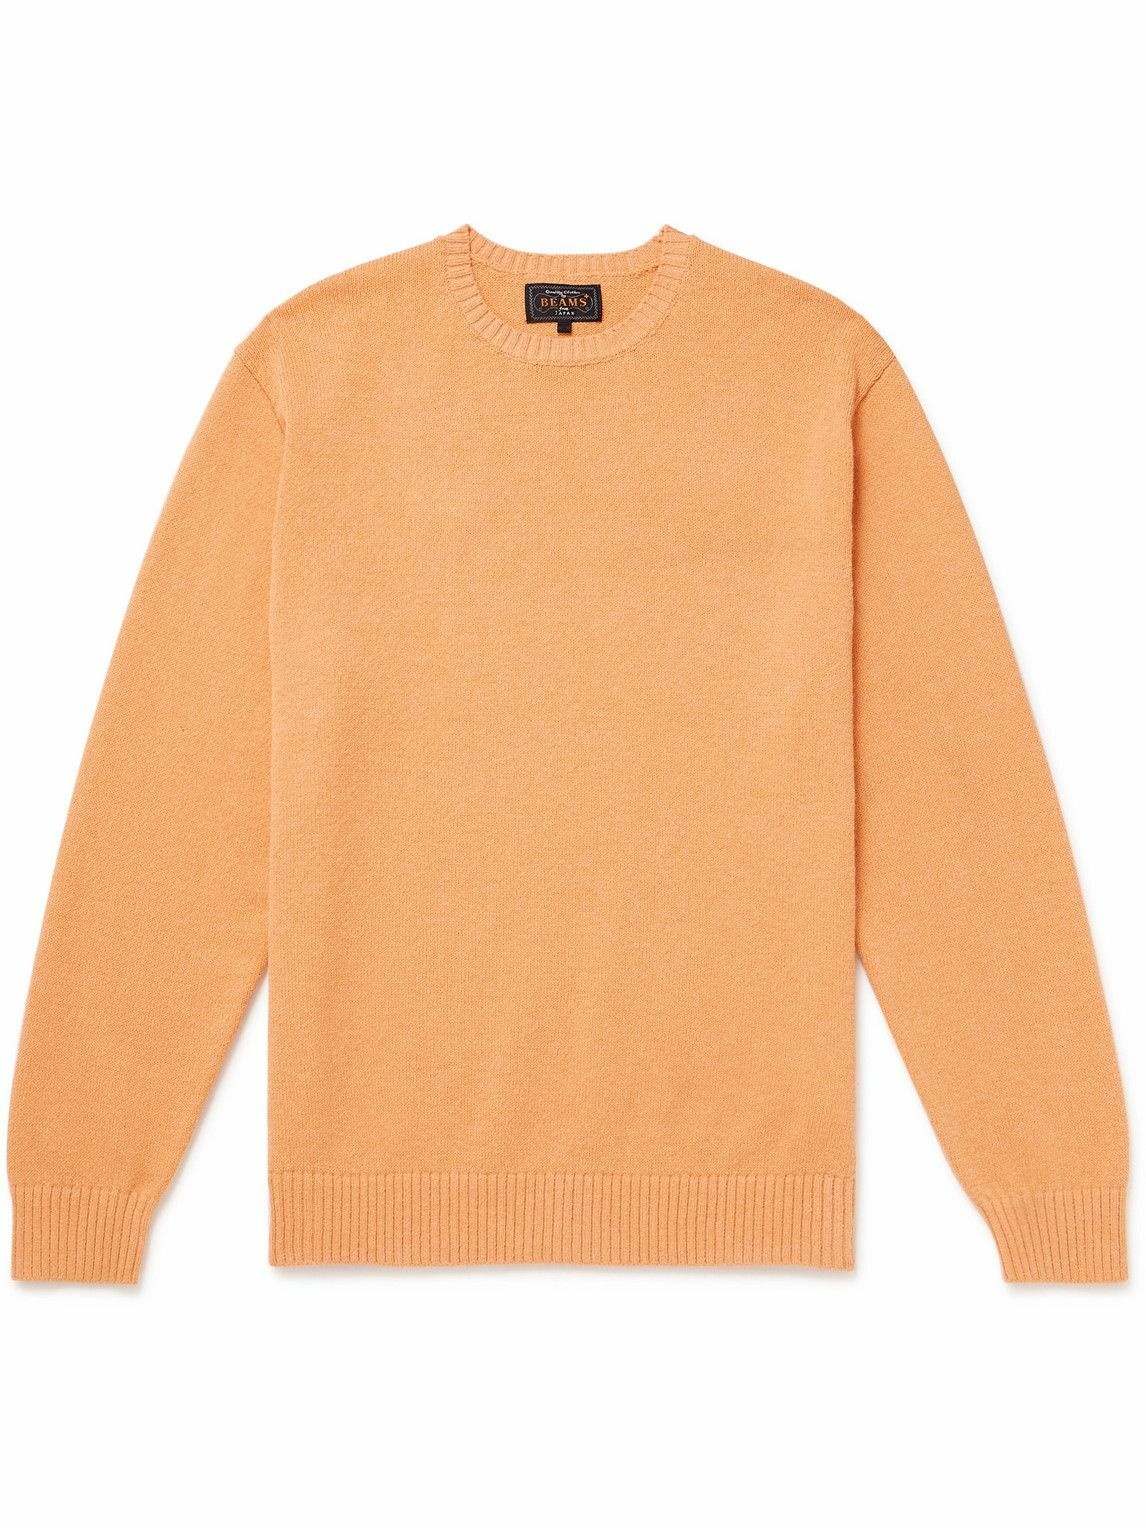 Beams Plus - Wool Sweater - Orange Beams Plus